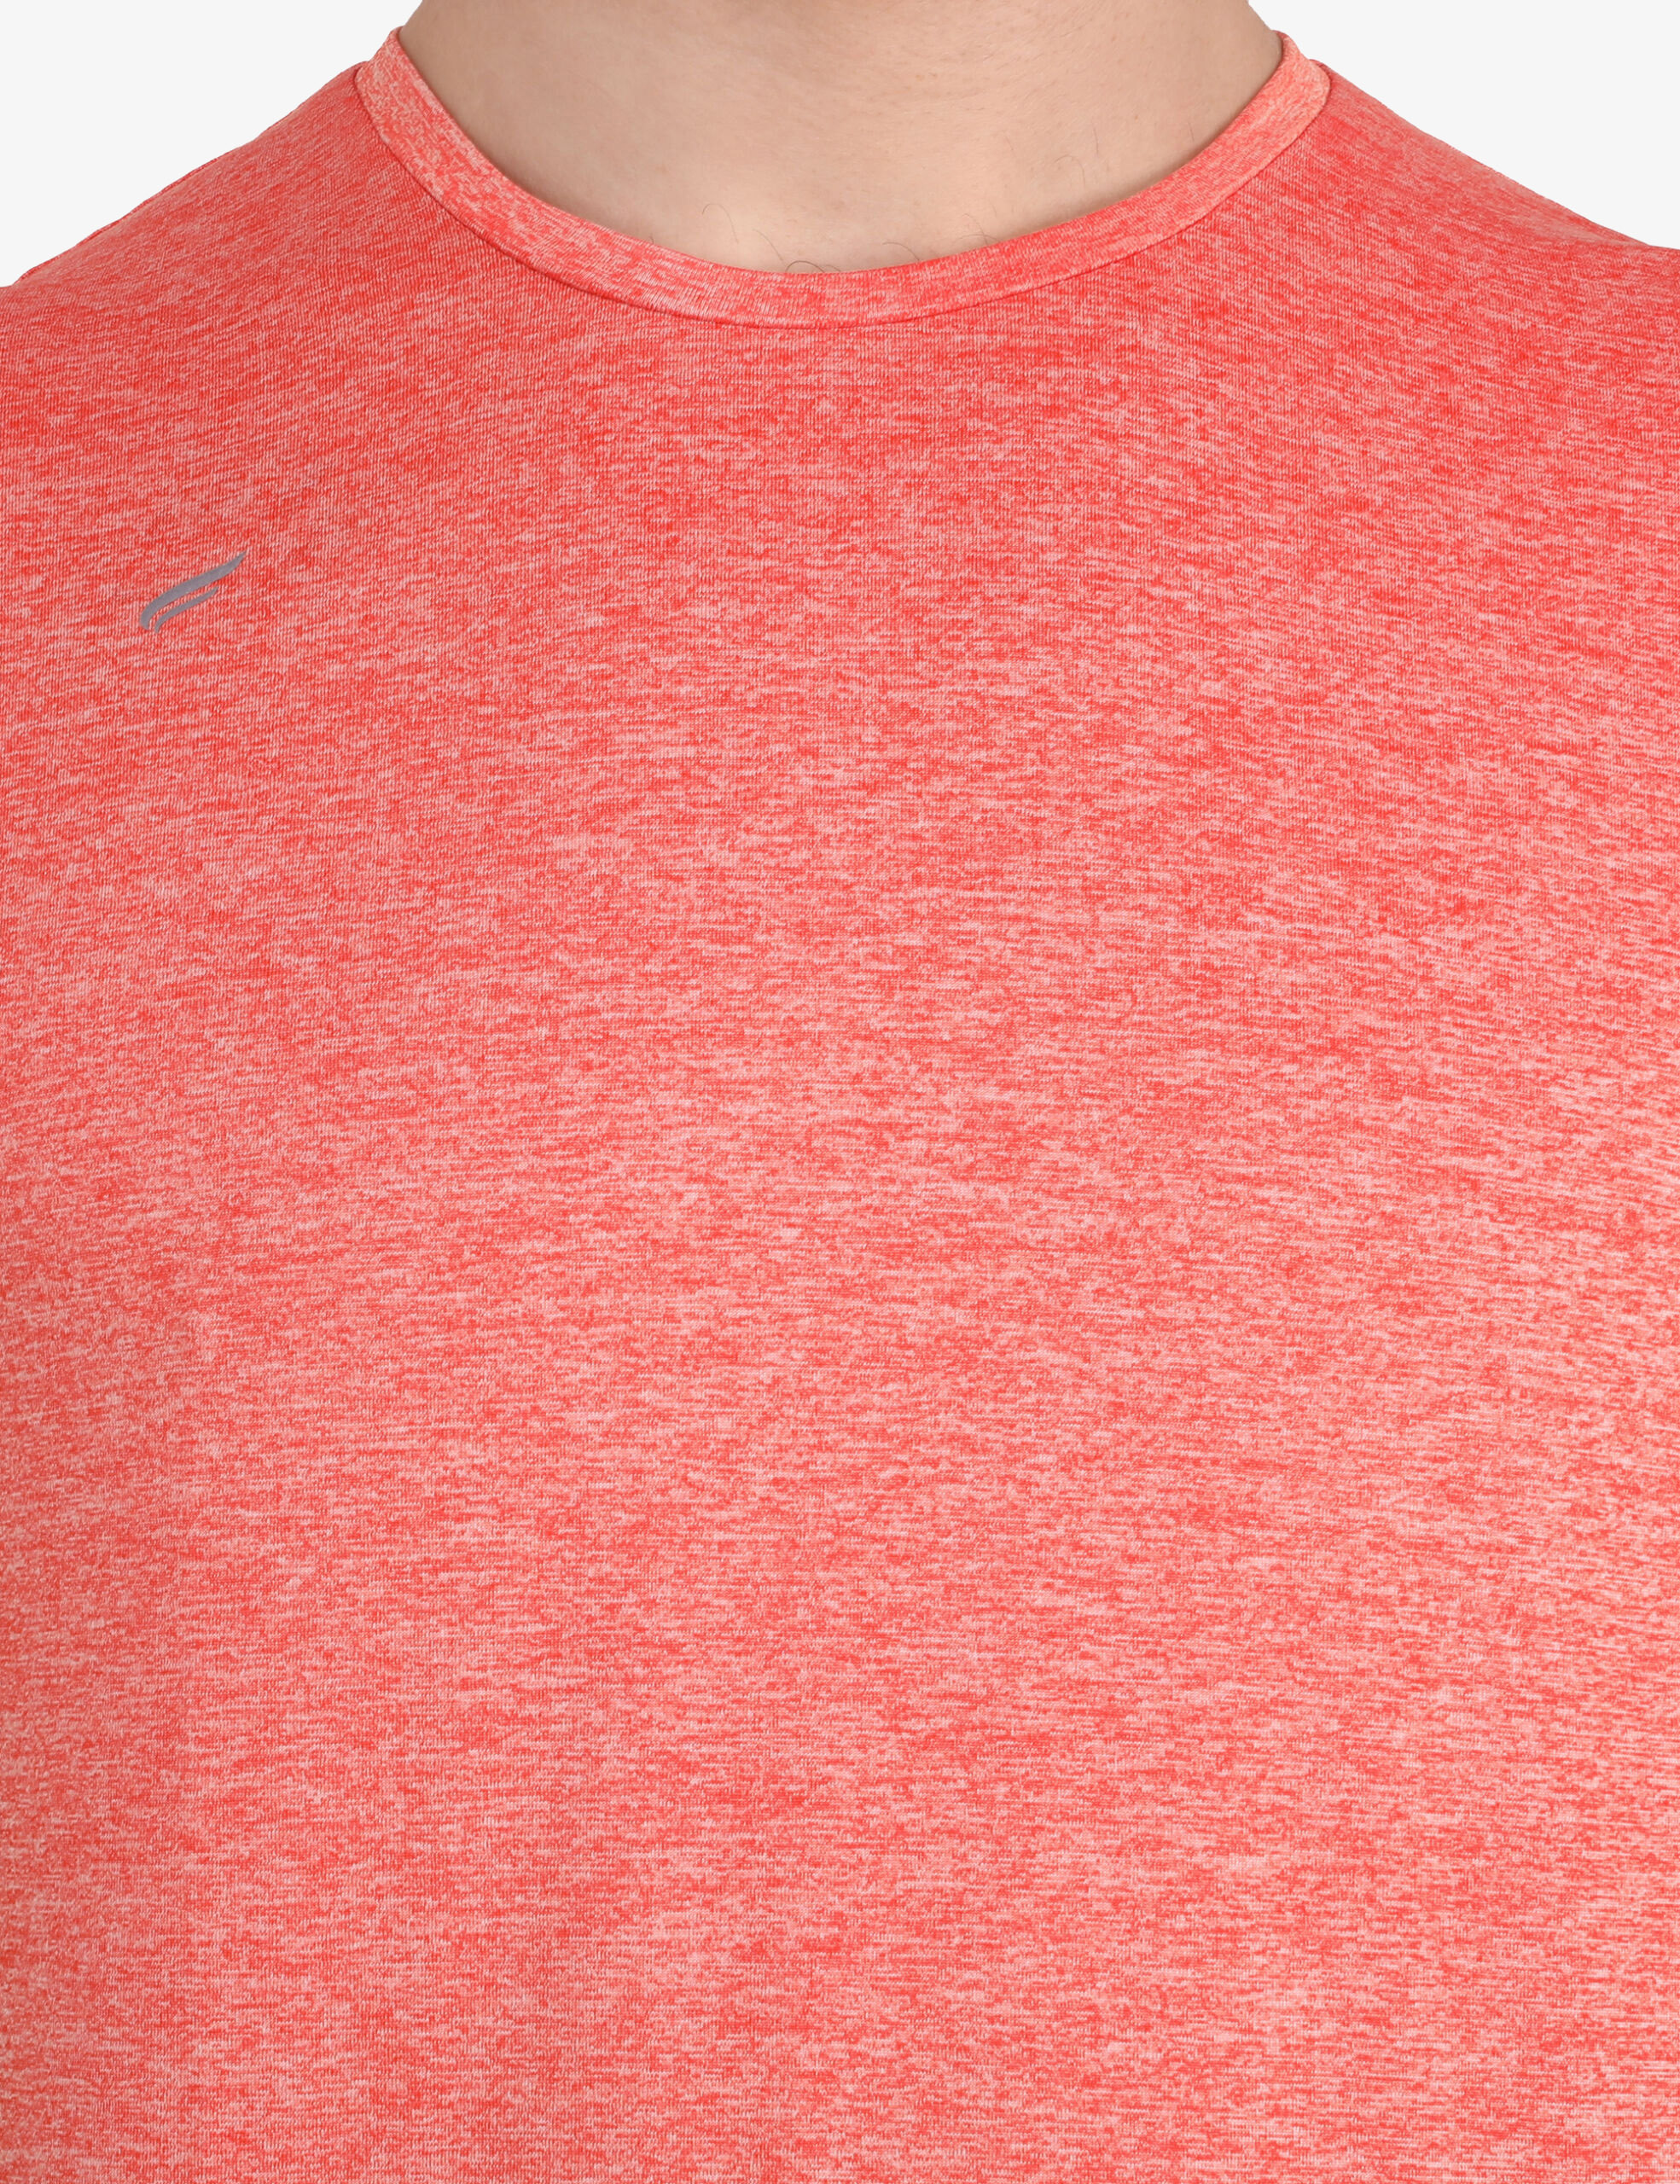 ASI All Rounder Orange T-shirt for Men